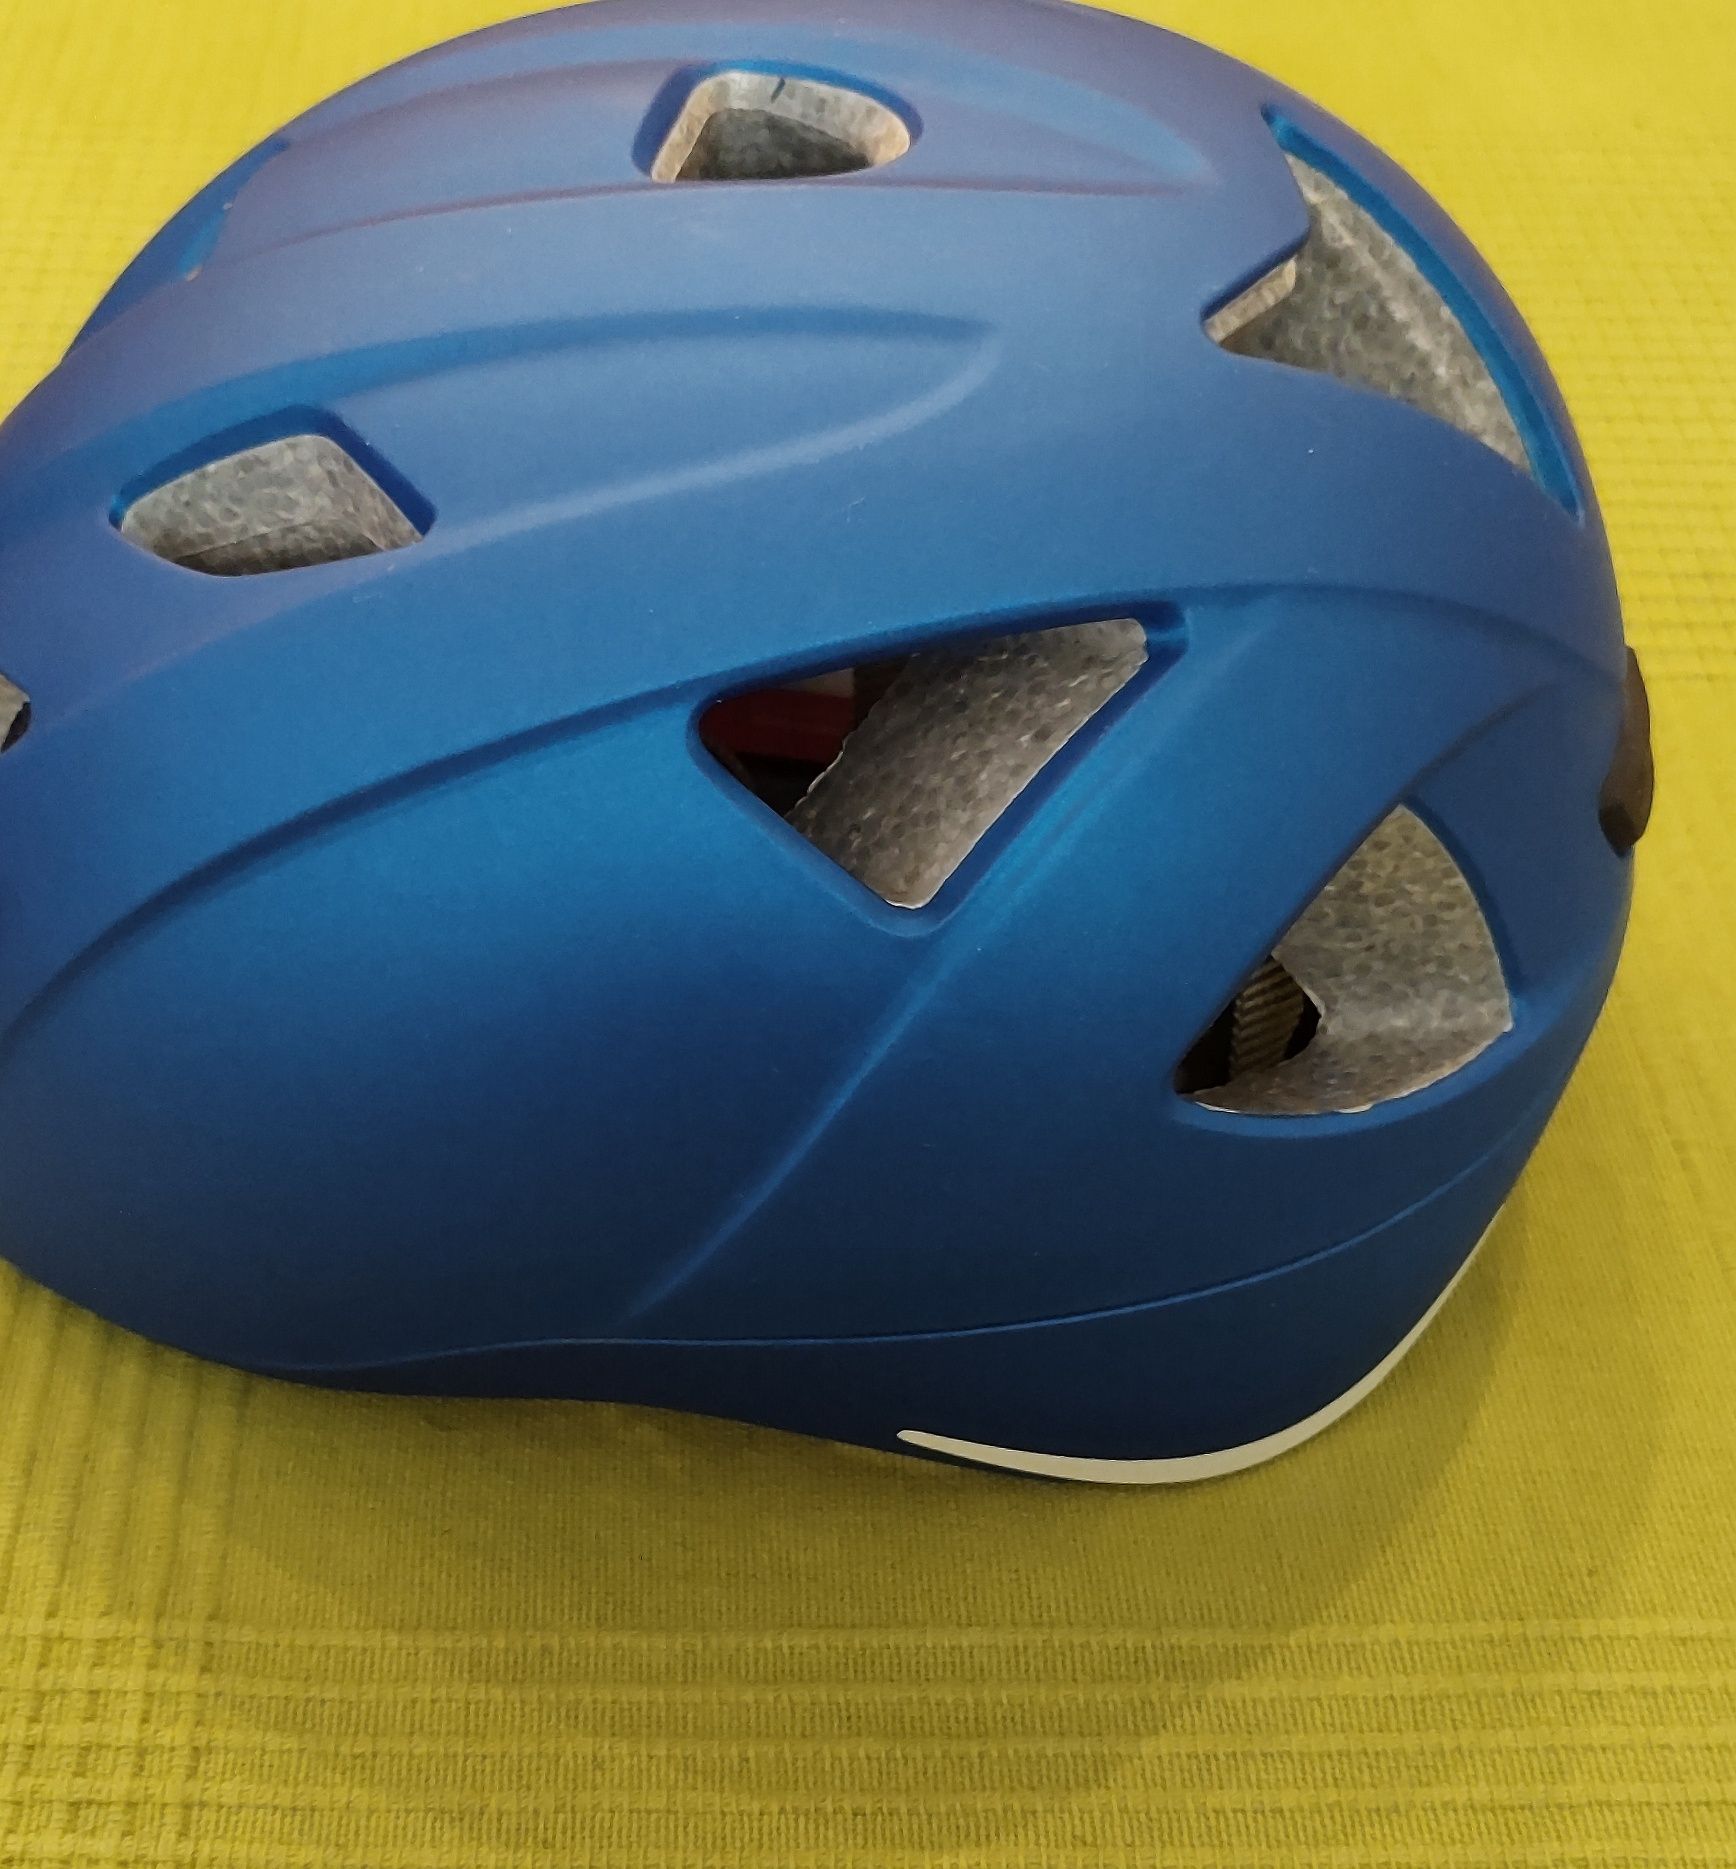 Nowy kask dziecięcy Alpina Ximo L.E 45-49 cm blue